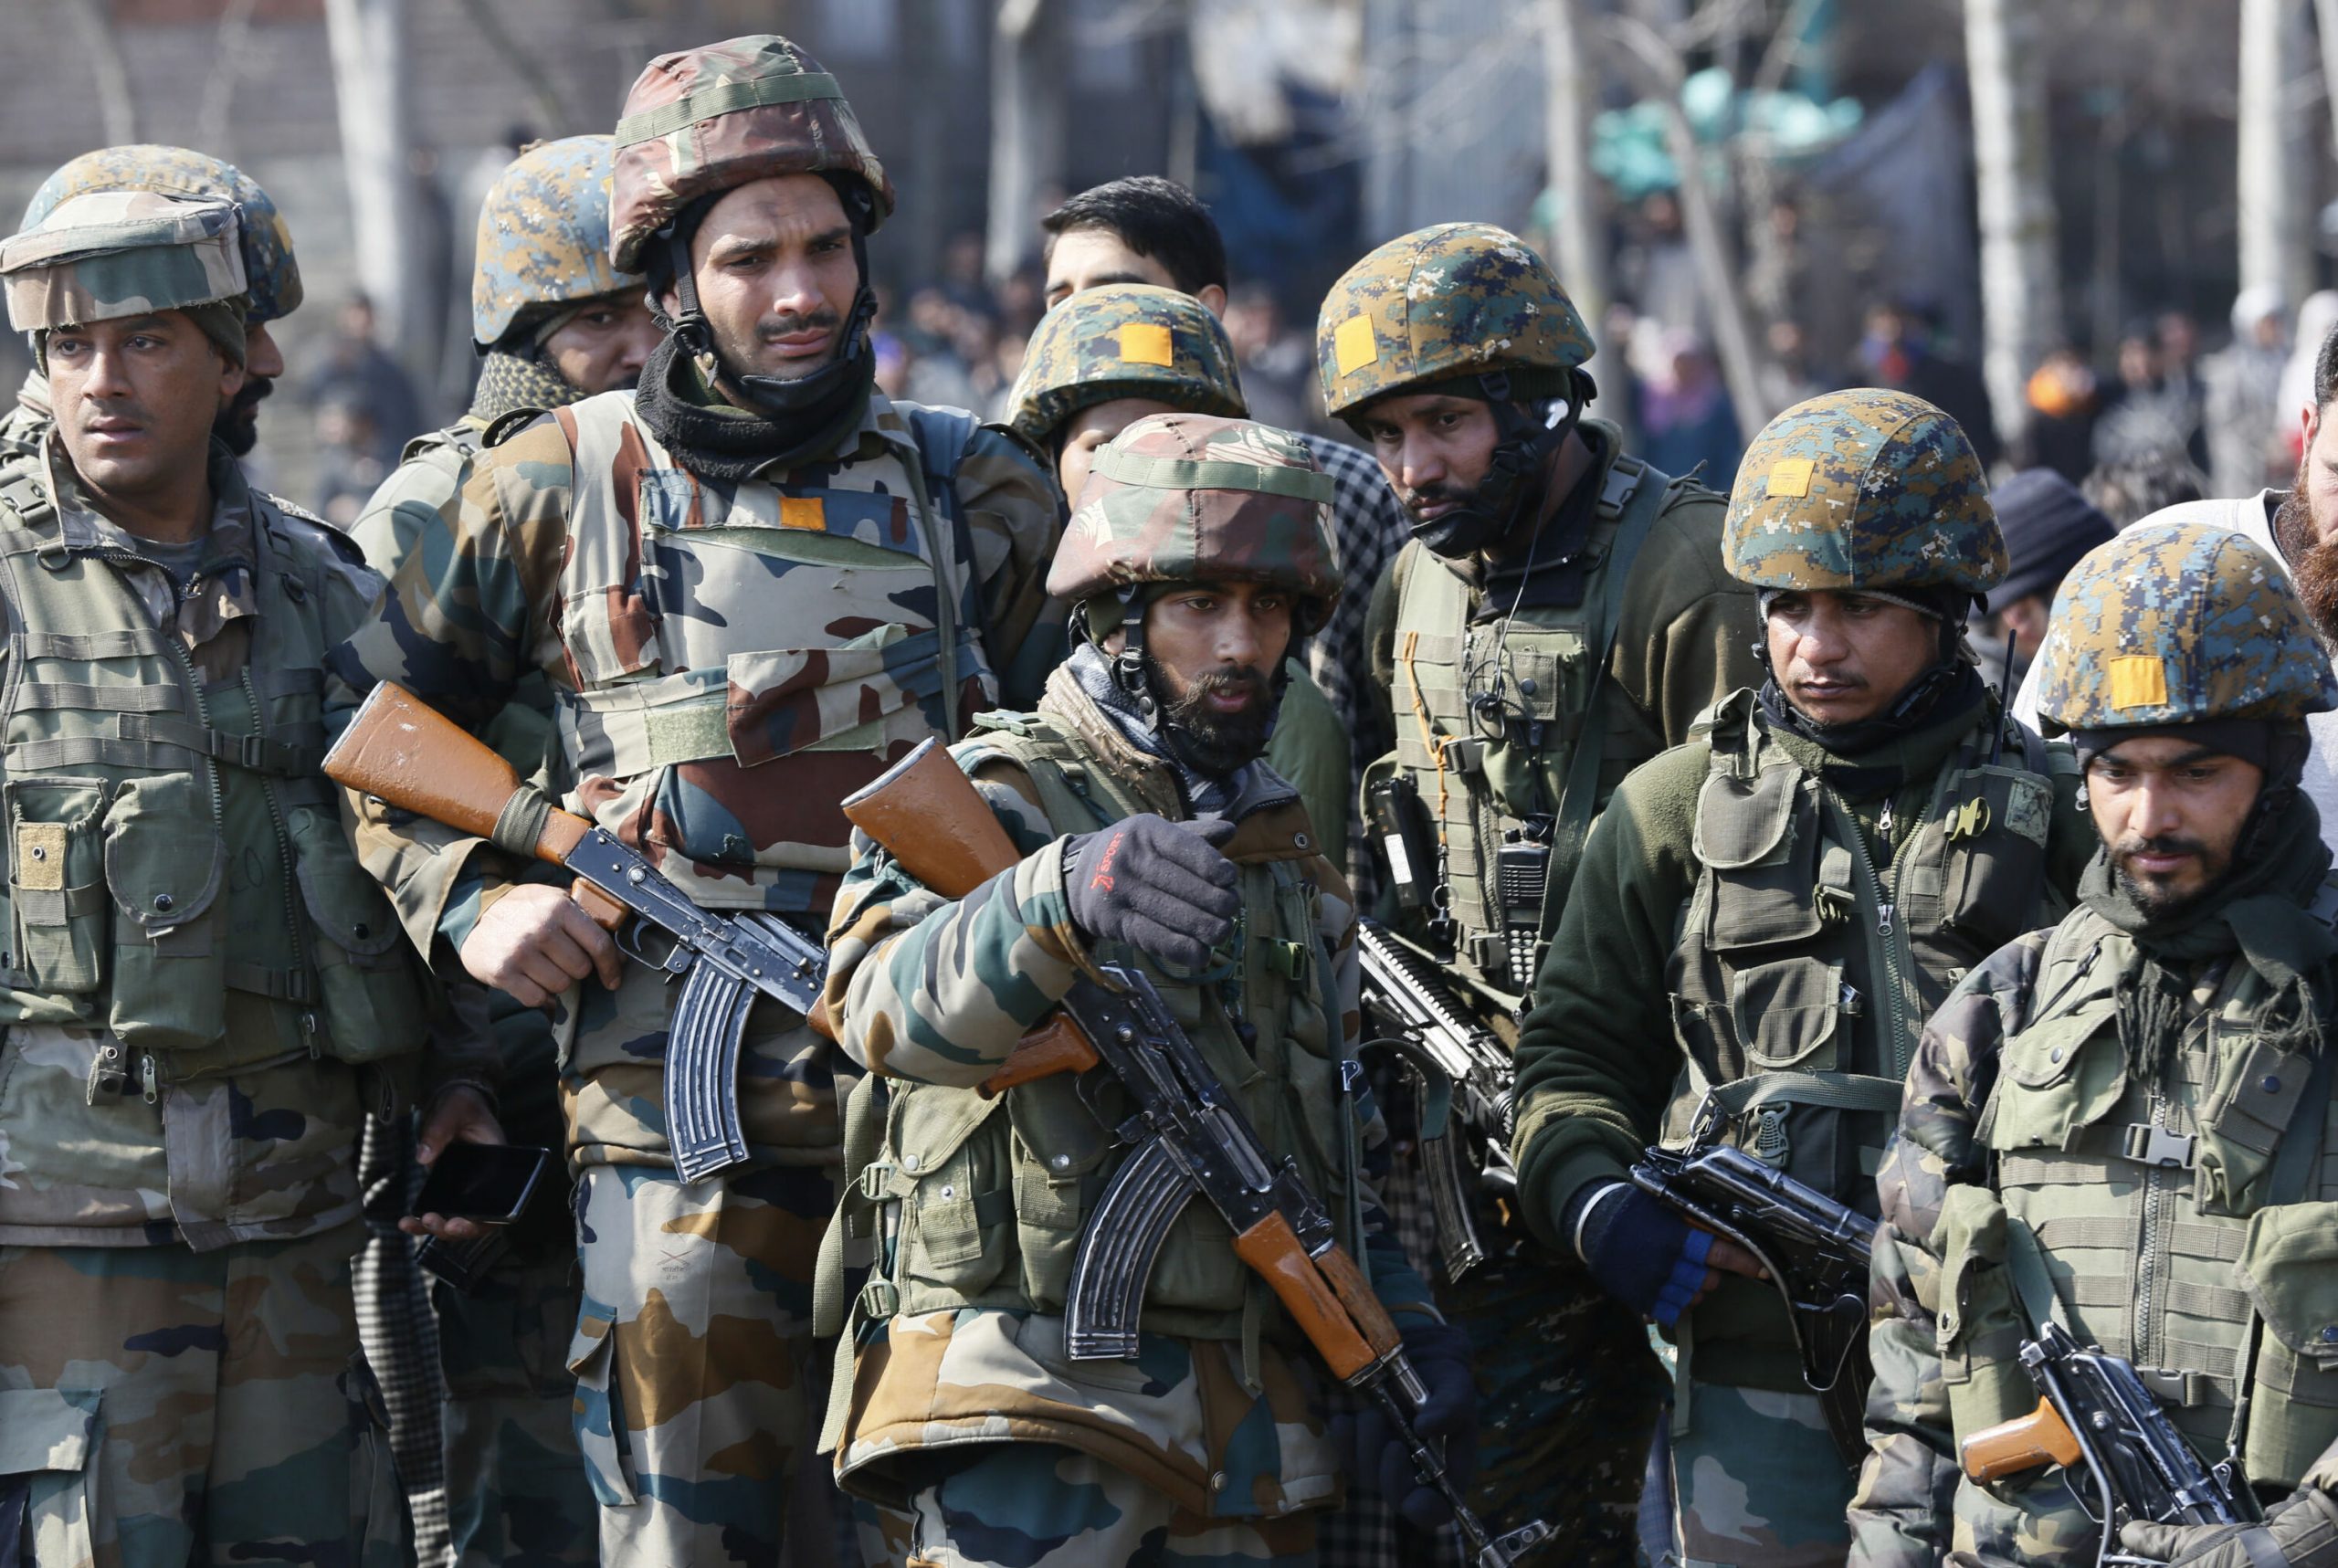 Трое индийских военнослужащих погибли в пограничном районе Ладакх - Фото